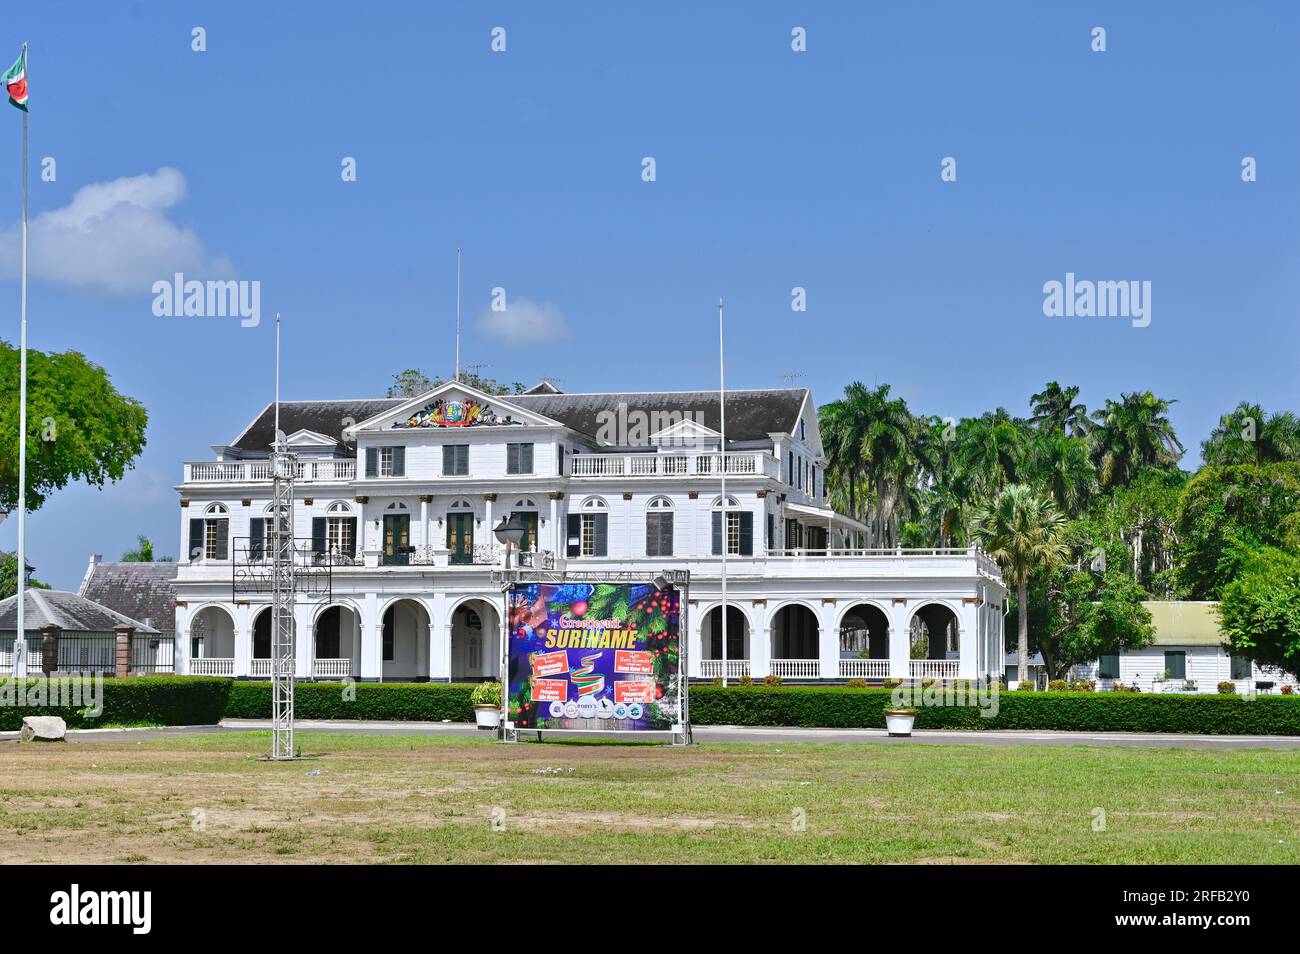 Der Präsidentenpalast von Suriname in der Hauptstadt Paramaribo. Davor ein Banner, das den Besuchern frohe weihnachten und ein erfolgreiches neues Jahr wünscht Stockfoto